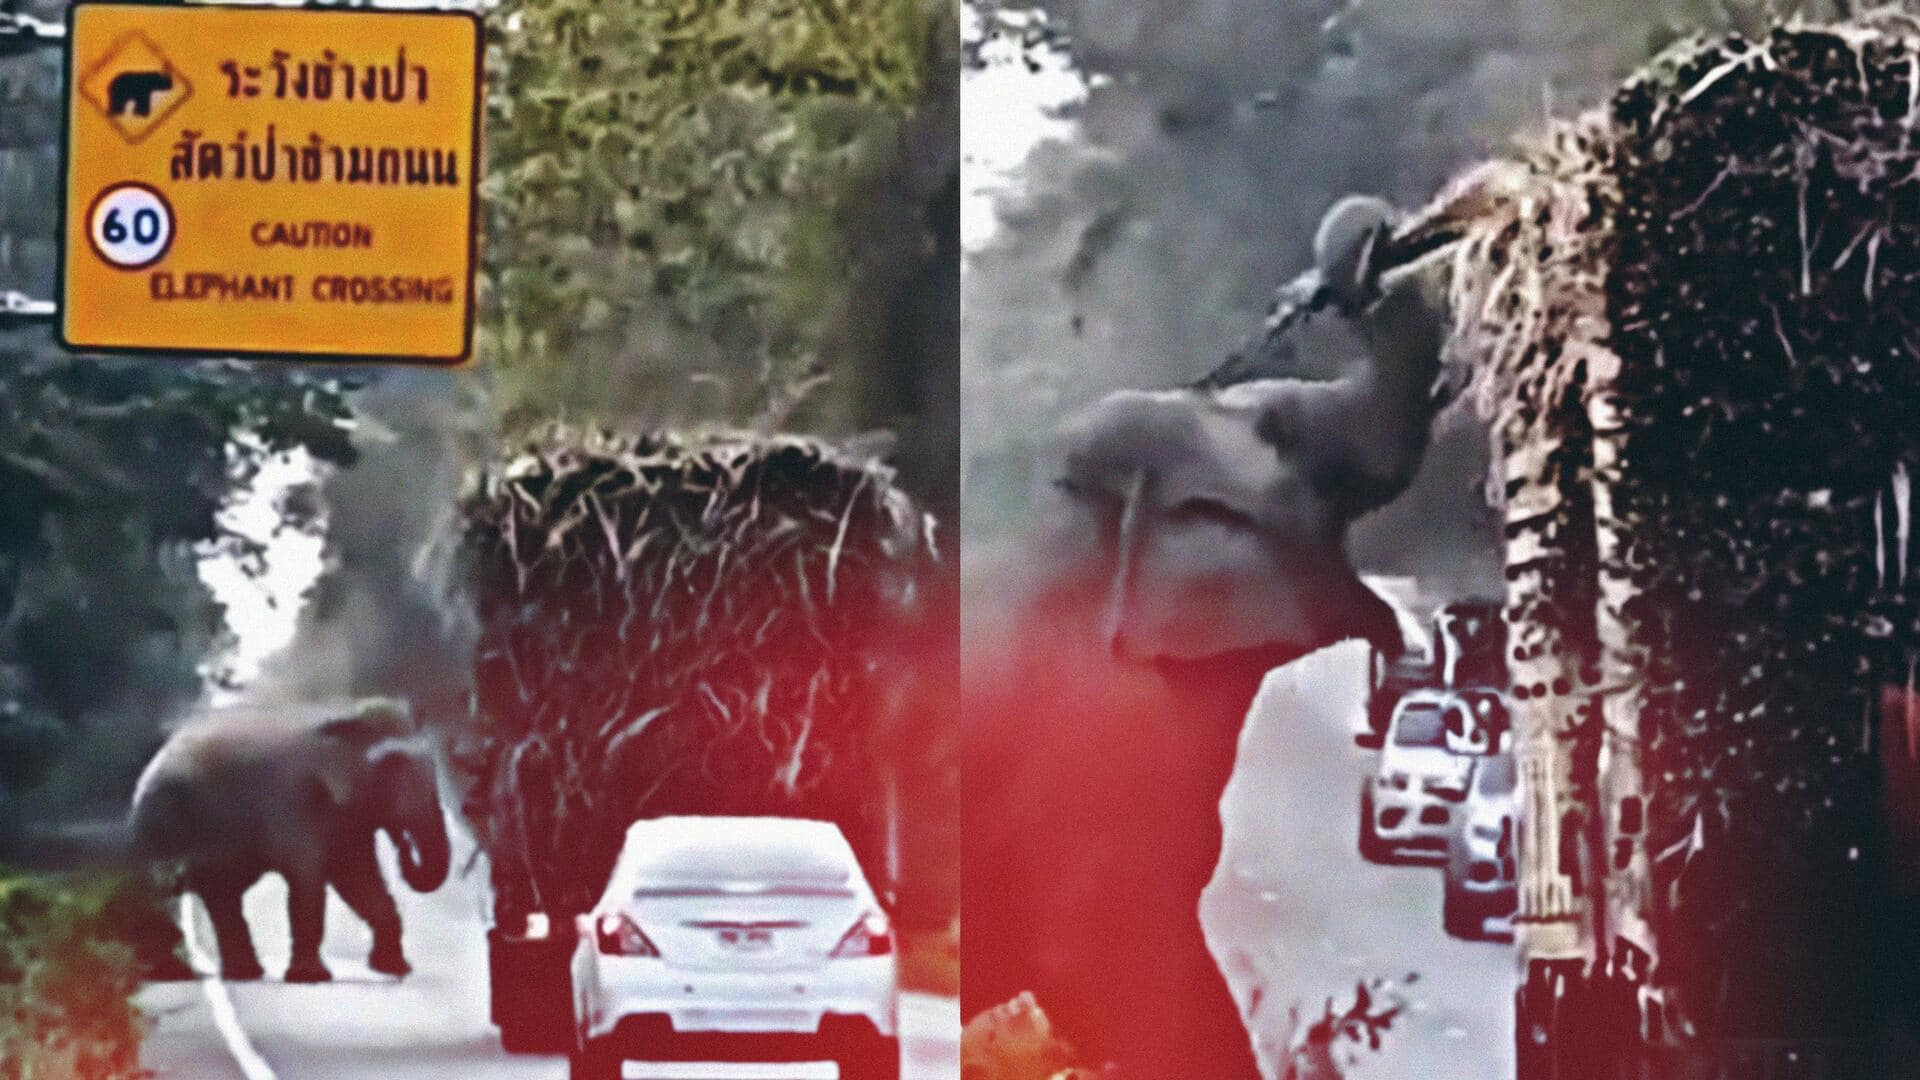 ट्रक से 'टोल टैक्स' वसूलता दिखा हाथी, इंटरनेट पर वायरल हुआ वीडियो